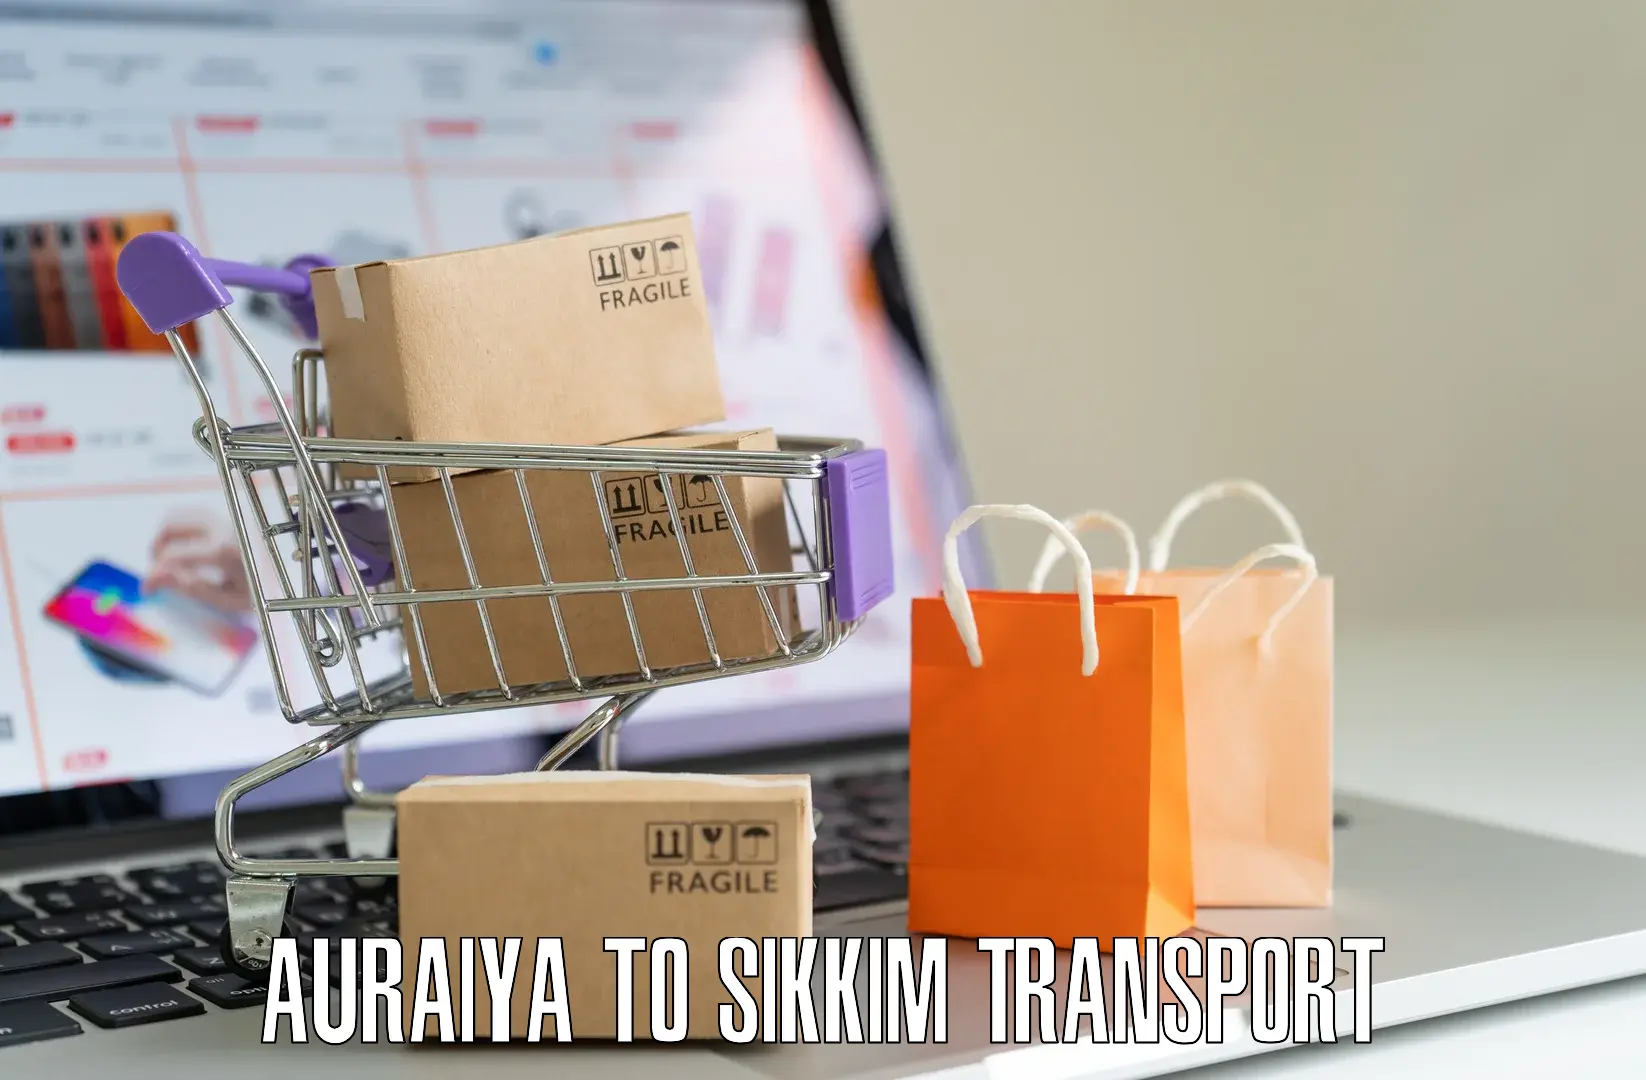 Interstate transport services Auraiya to Ravangla